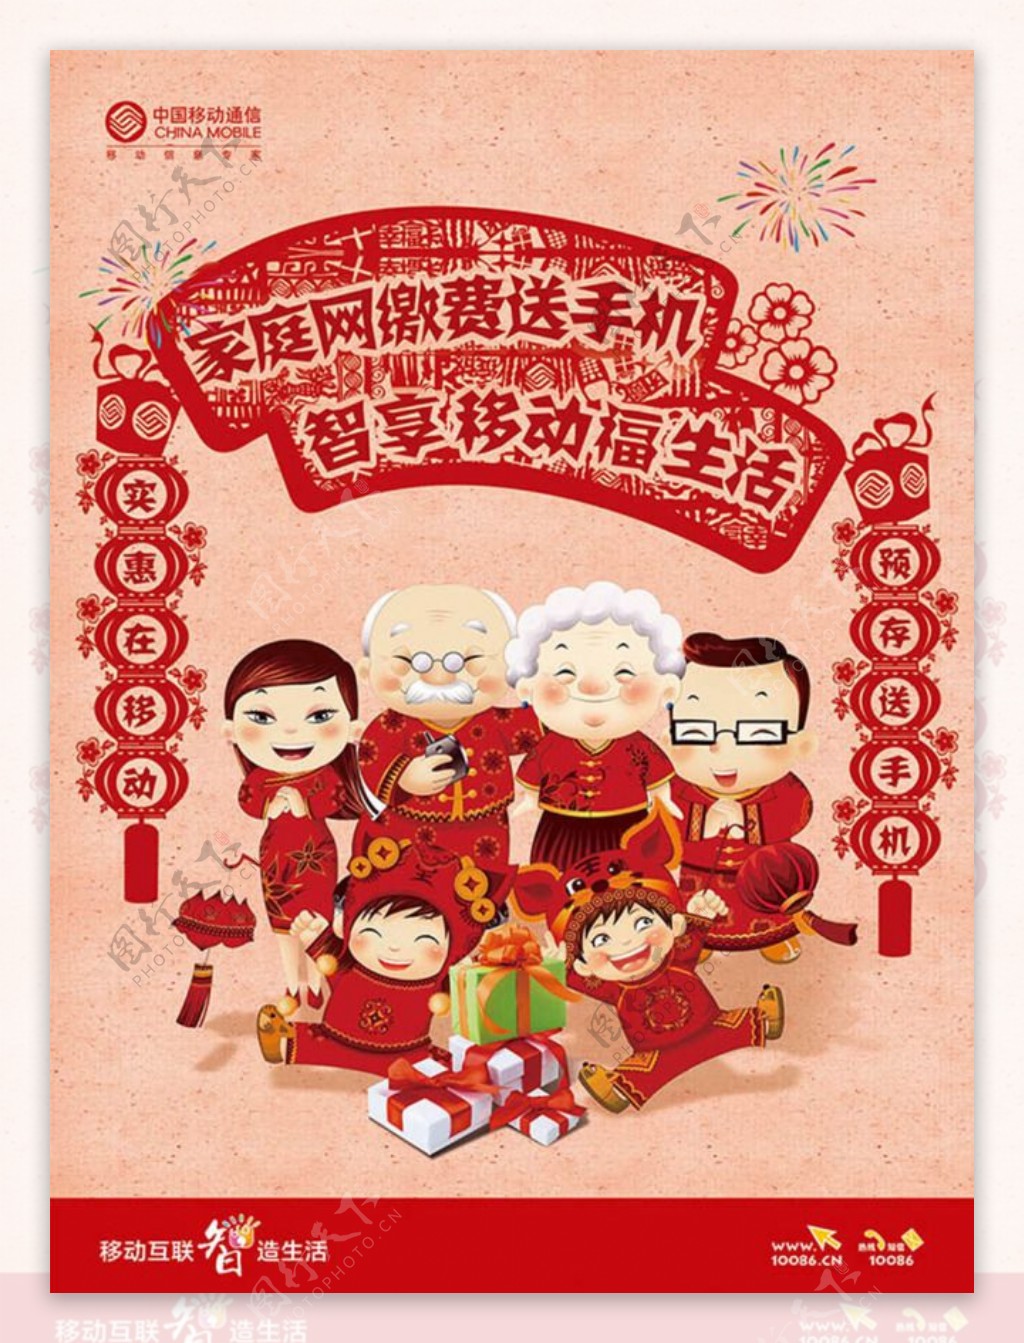 中国移动新年剪纸广告psd素材下载